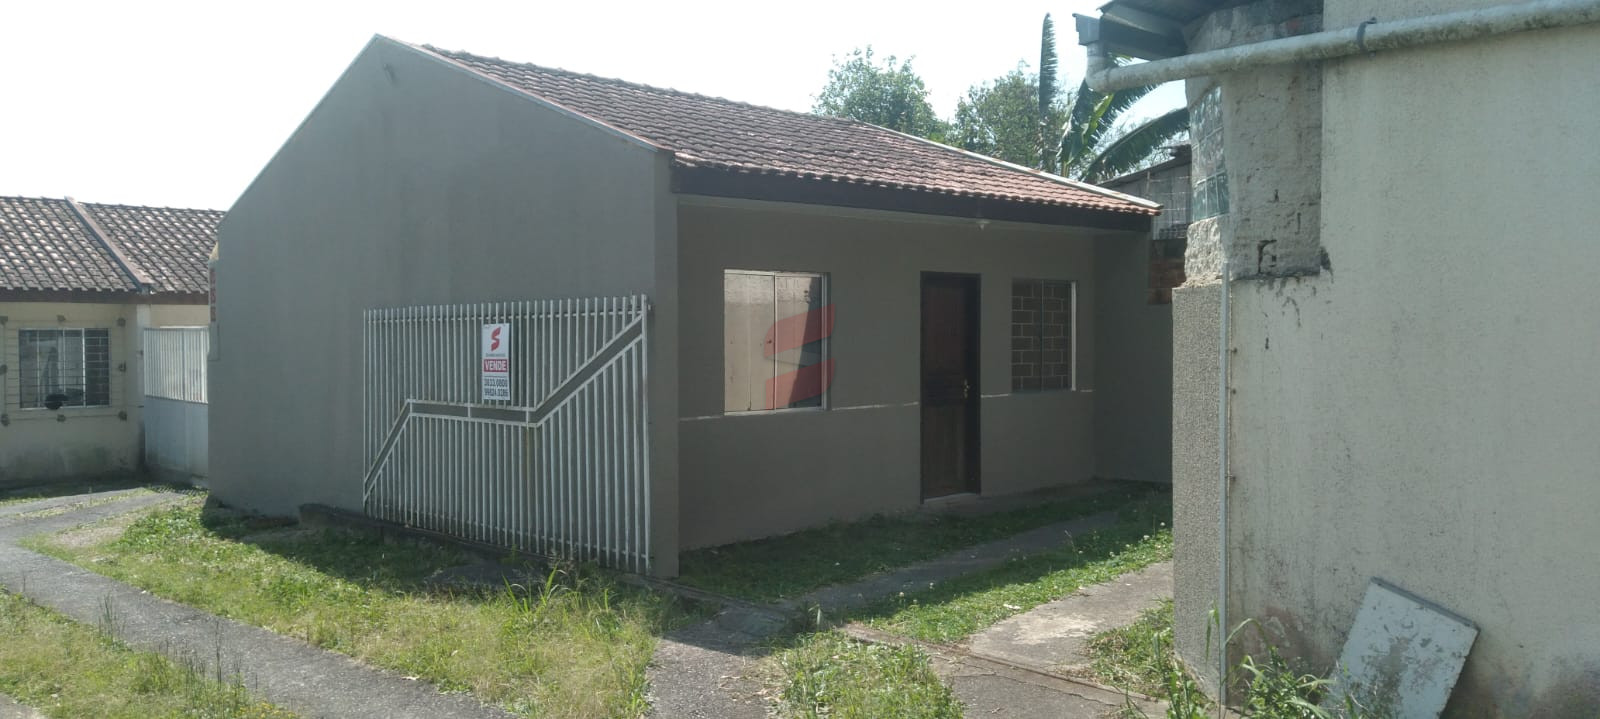 CASA com 2 dormitórios à venda com 116.22m² por R$ 179.000,00 no bairro Vila Vicente Macedo - PIRAQUARA / PR